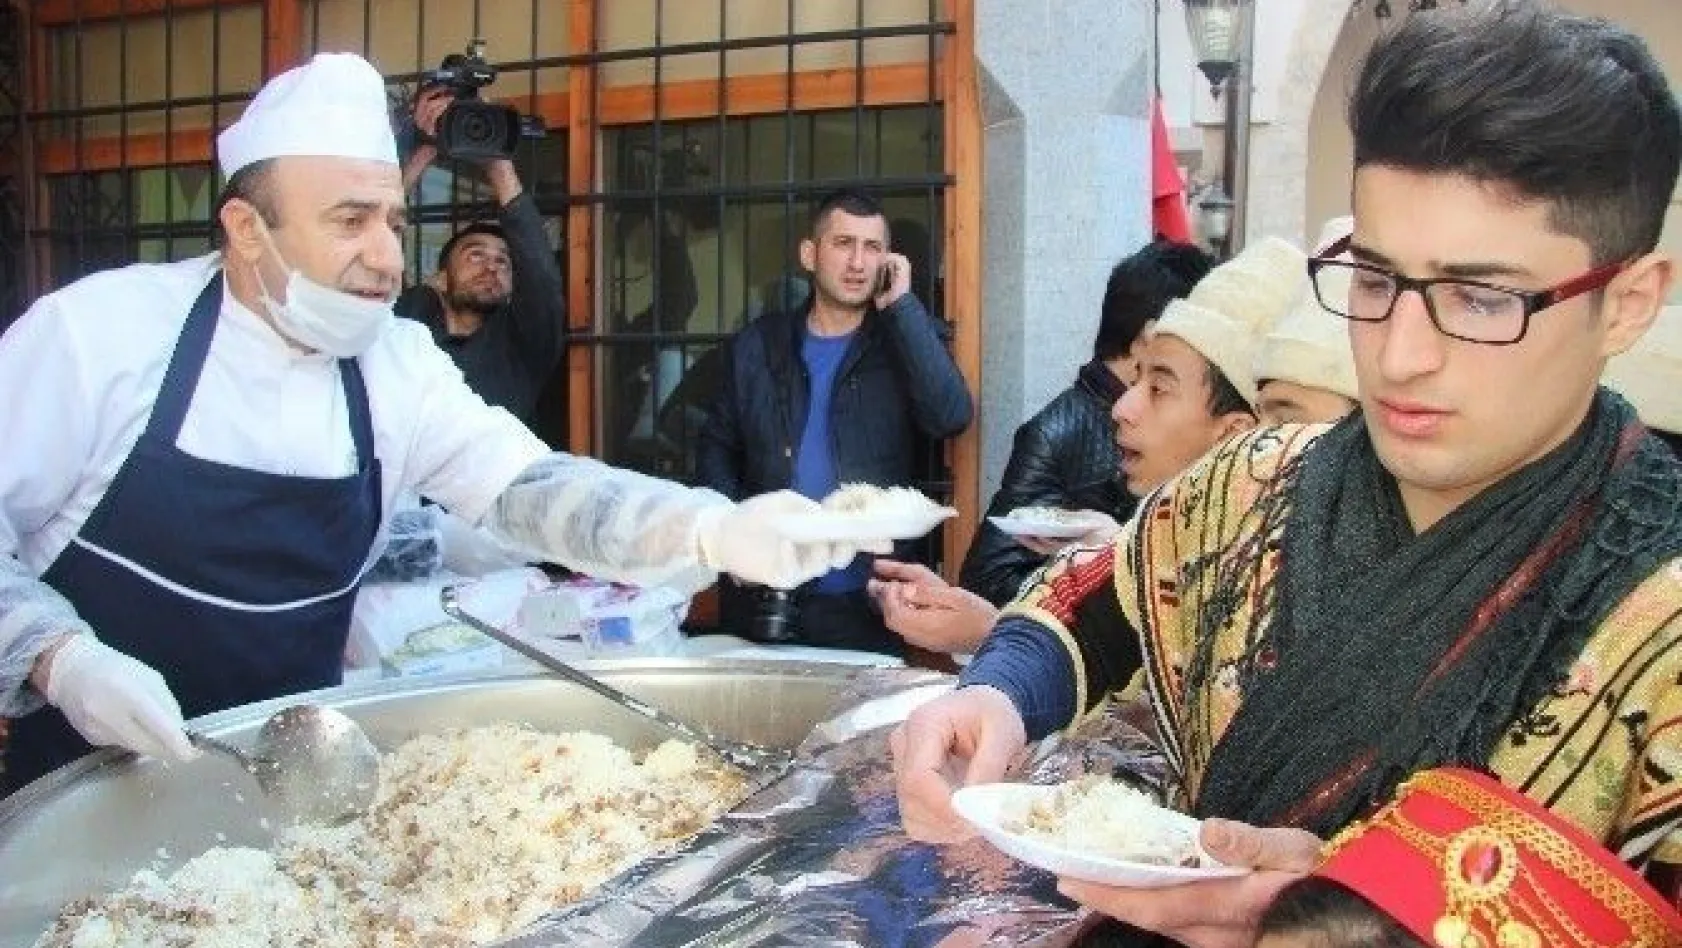 Kahramanmaraş'ta şehitler anısına 5 bin kişiye etli pilav dağıtıldı
